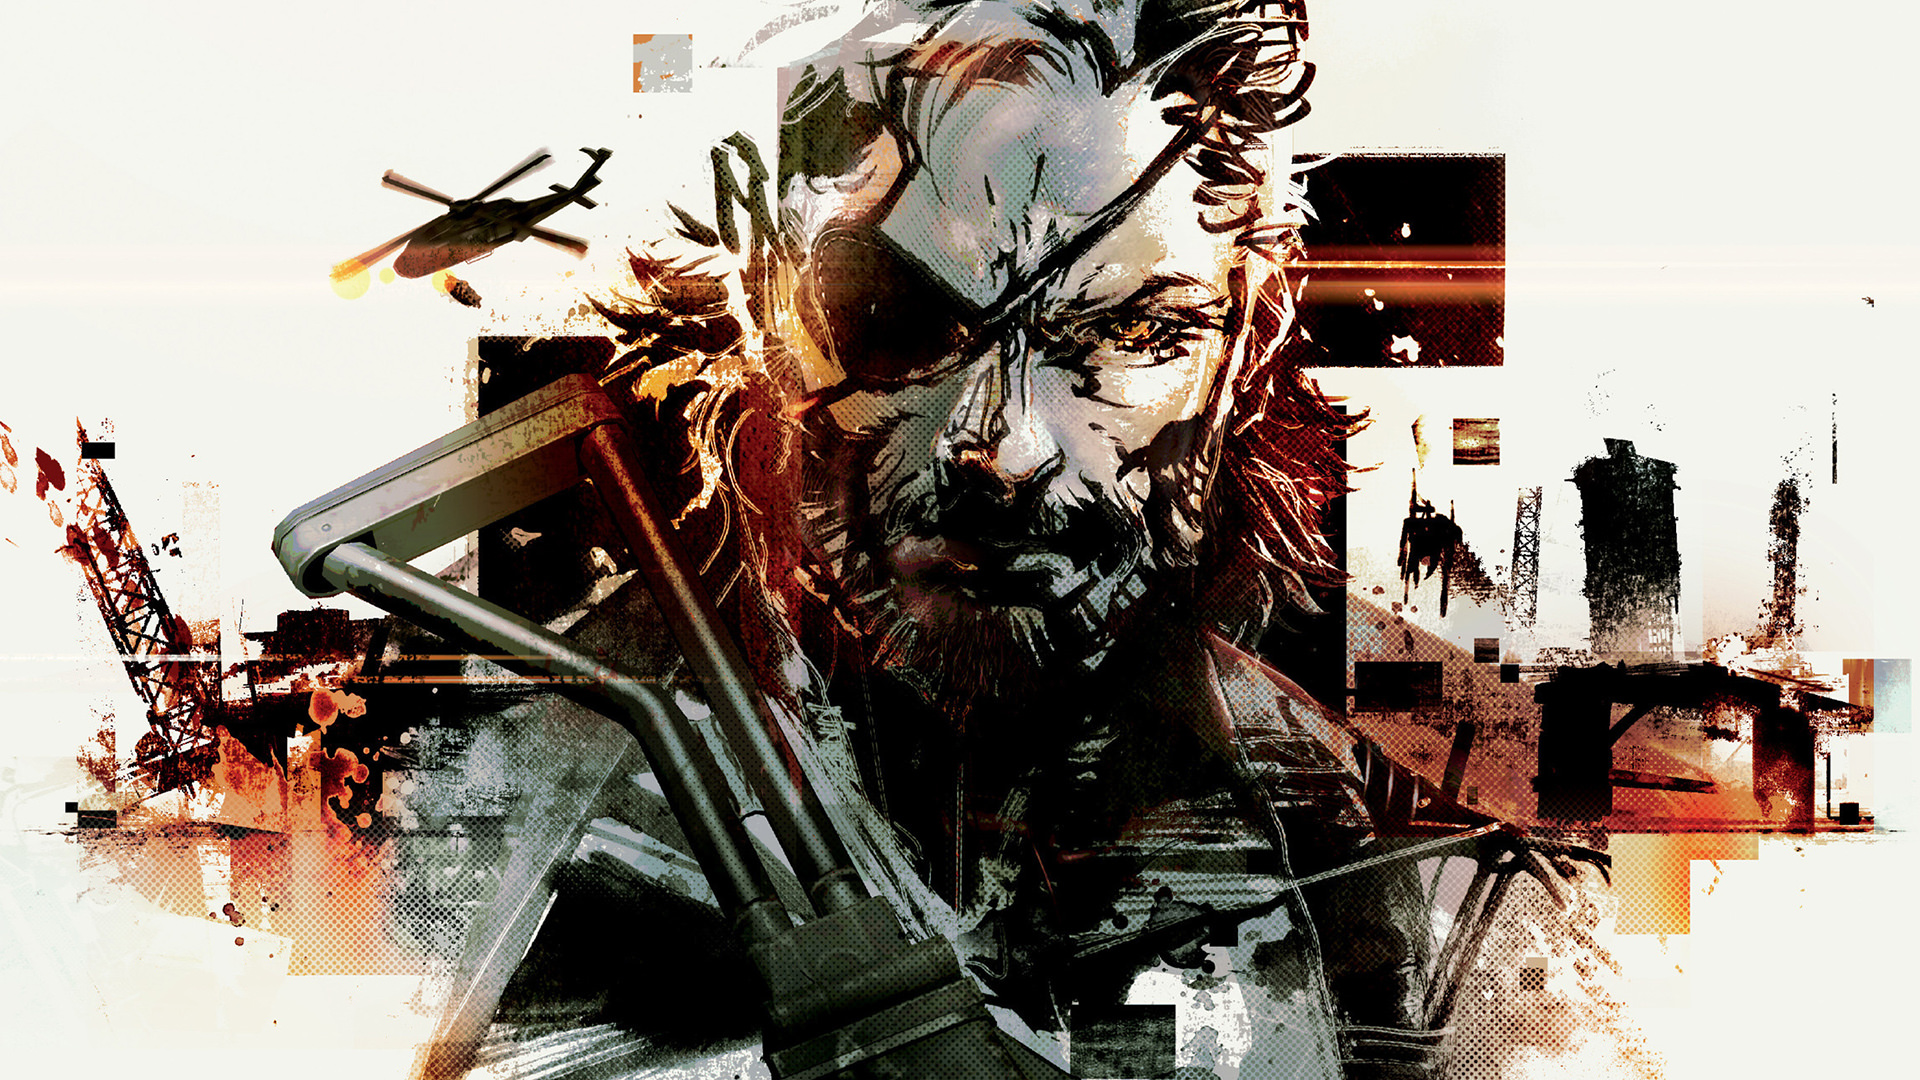 Art of Metal Gear Solid 5 Wallpapers DESKTOP.